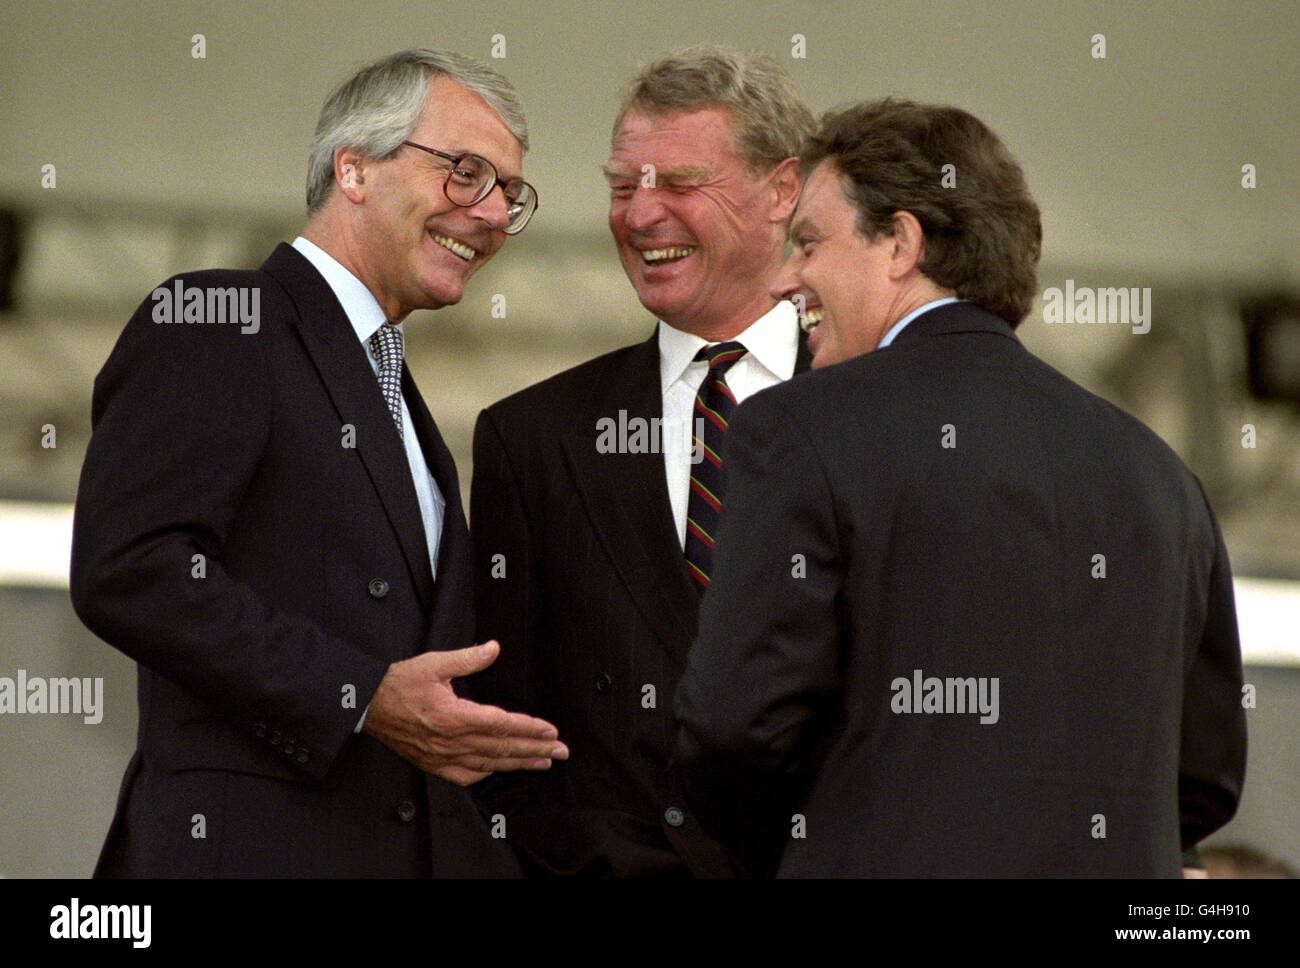 De gauche à droite : les leaders du parti, John Major (conservateur), Paddy Ashdown (démocrates libéraux) et Tony Blair (Labour), parlent avant la cérémonie de la retraite à Londres, lors des commémorations de la fête du Japon. Banque D'Images